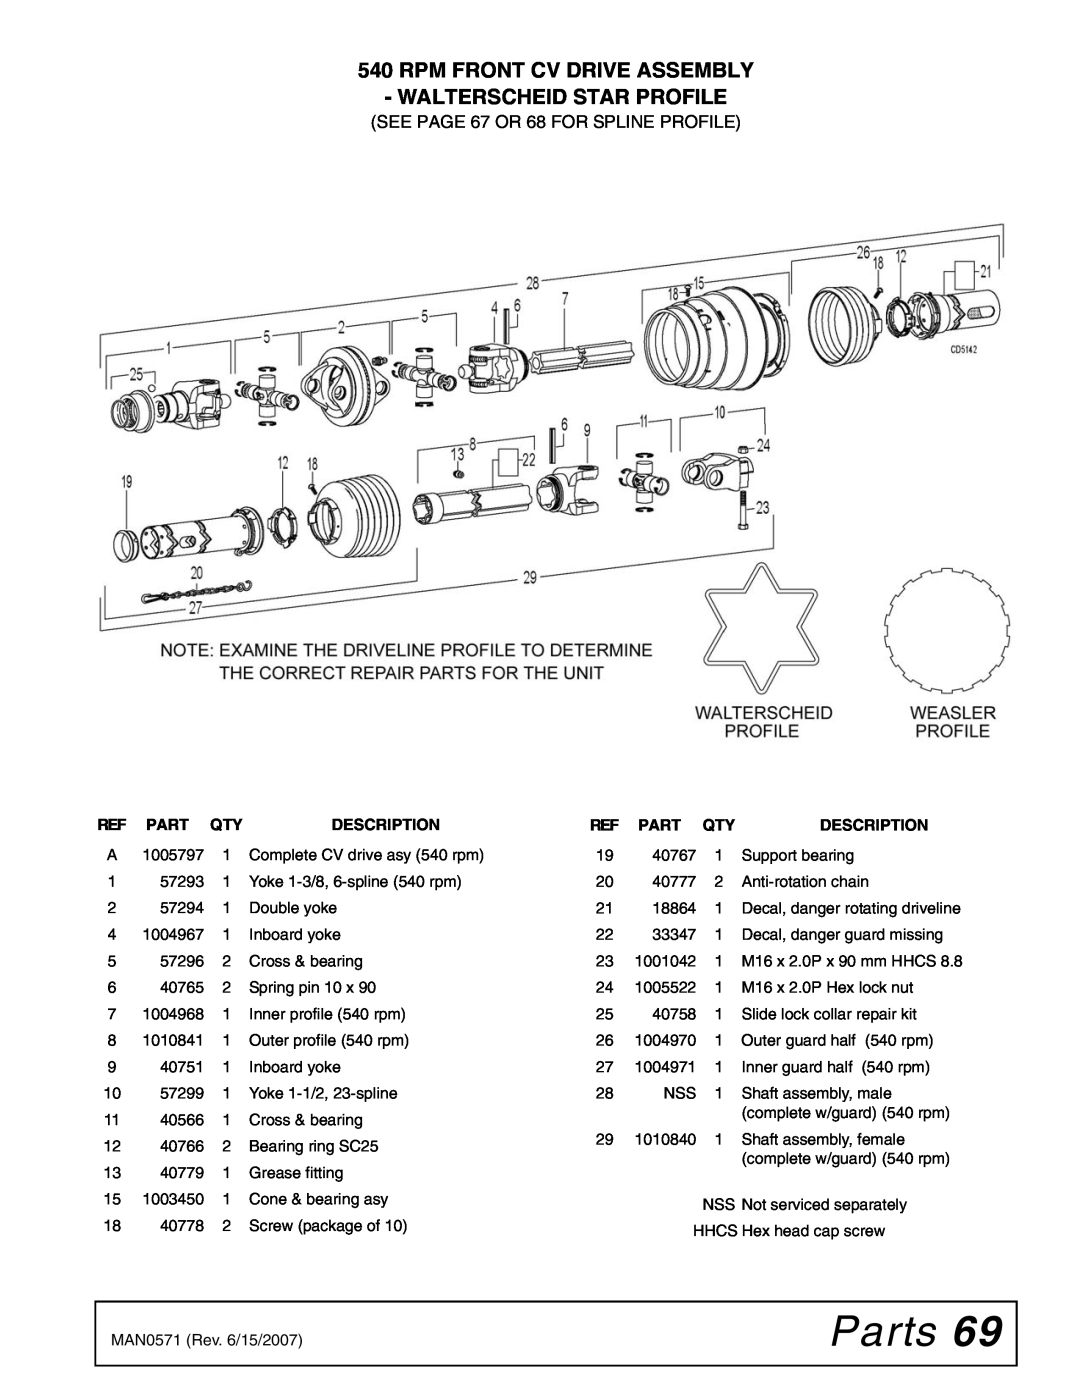 Woods Equipment DS1440Q, DSO1260Q, DS1260Q Parts, Rpm Front Cv Drive Assembly Walterscheid Star Profile, Description 